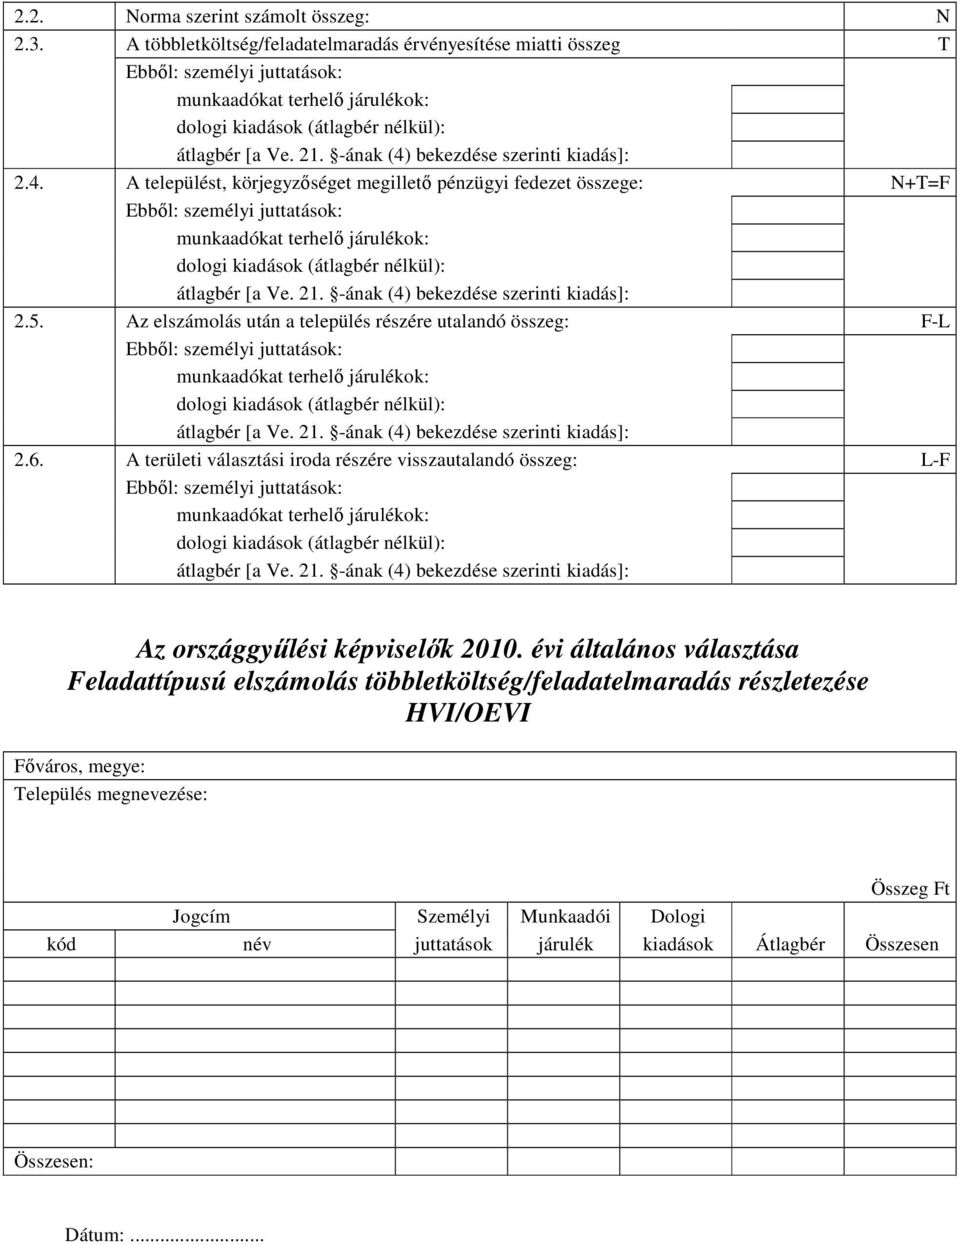 6. A területi választási iroda részére visszautalandó összeg: L-F Feladattípusú elszámolás többletköltség/feladatelmaradás részletezése